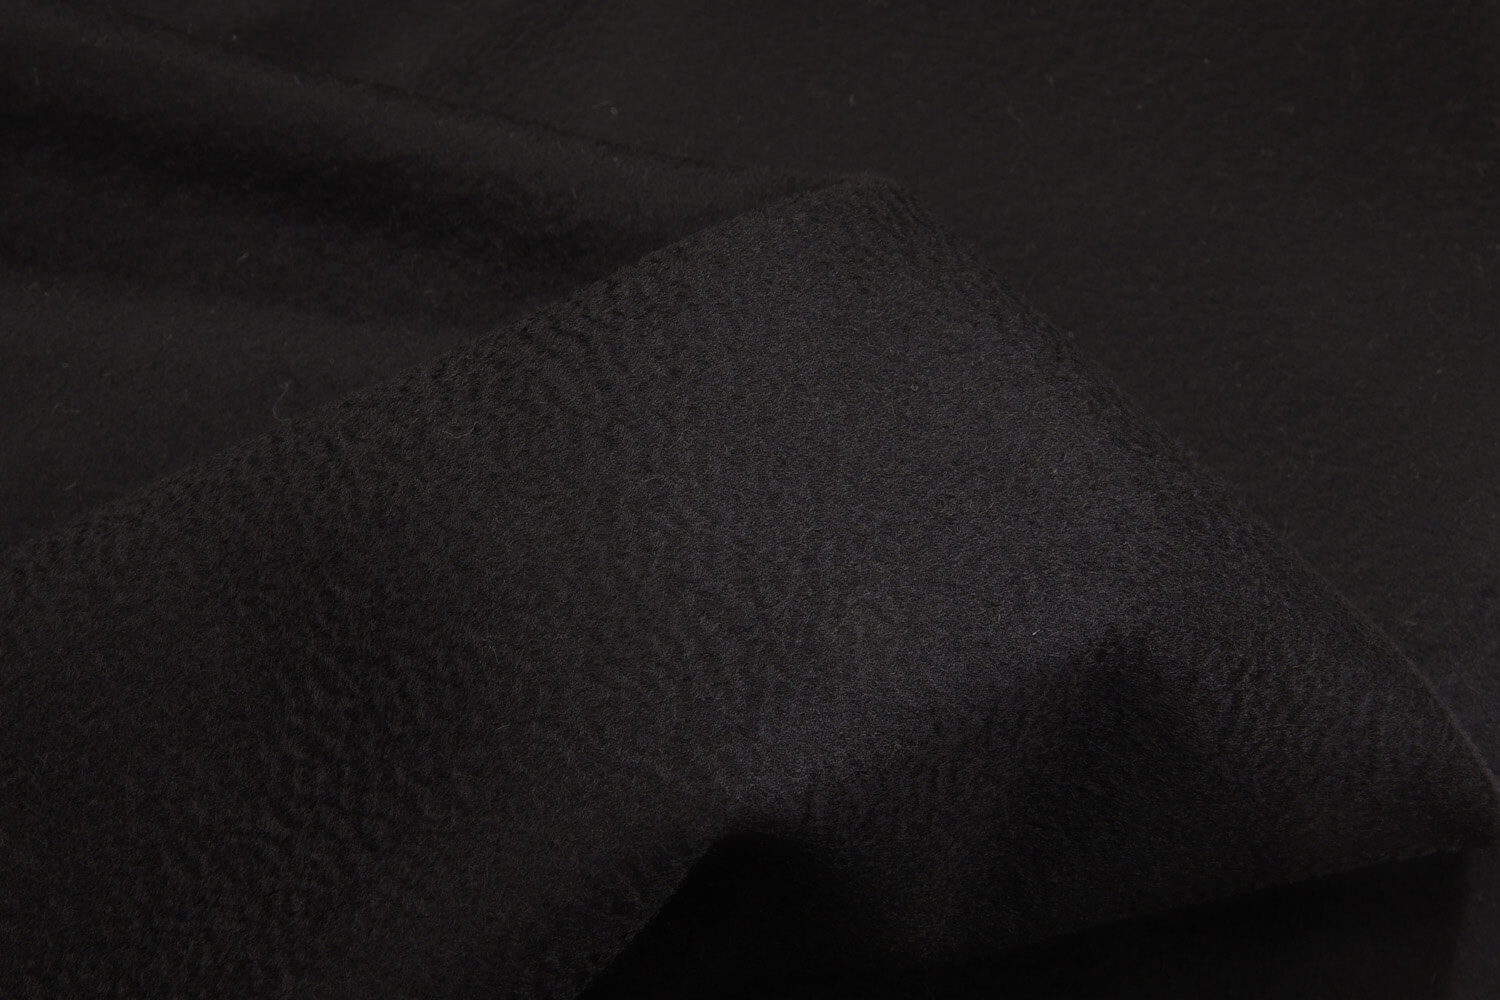 Пальтовный кашемир Piacenza для Max Mara ОТРЕЗЫ, цвет Черный, фото 1